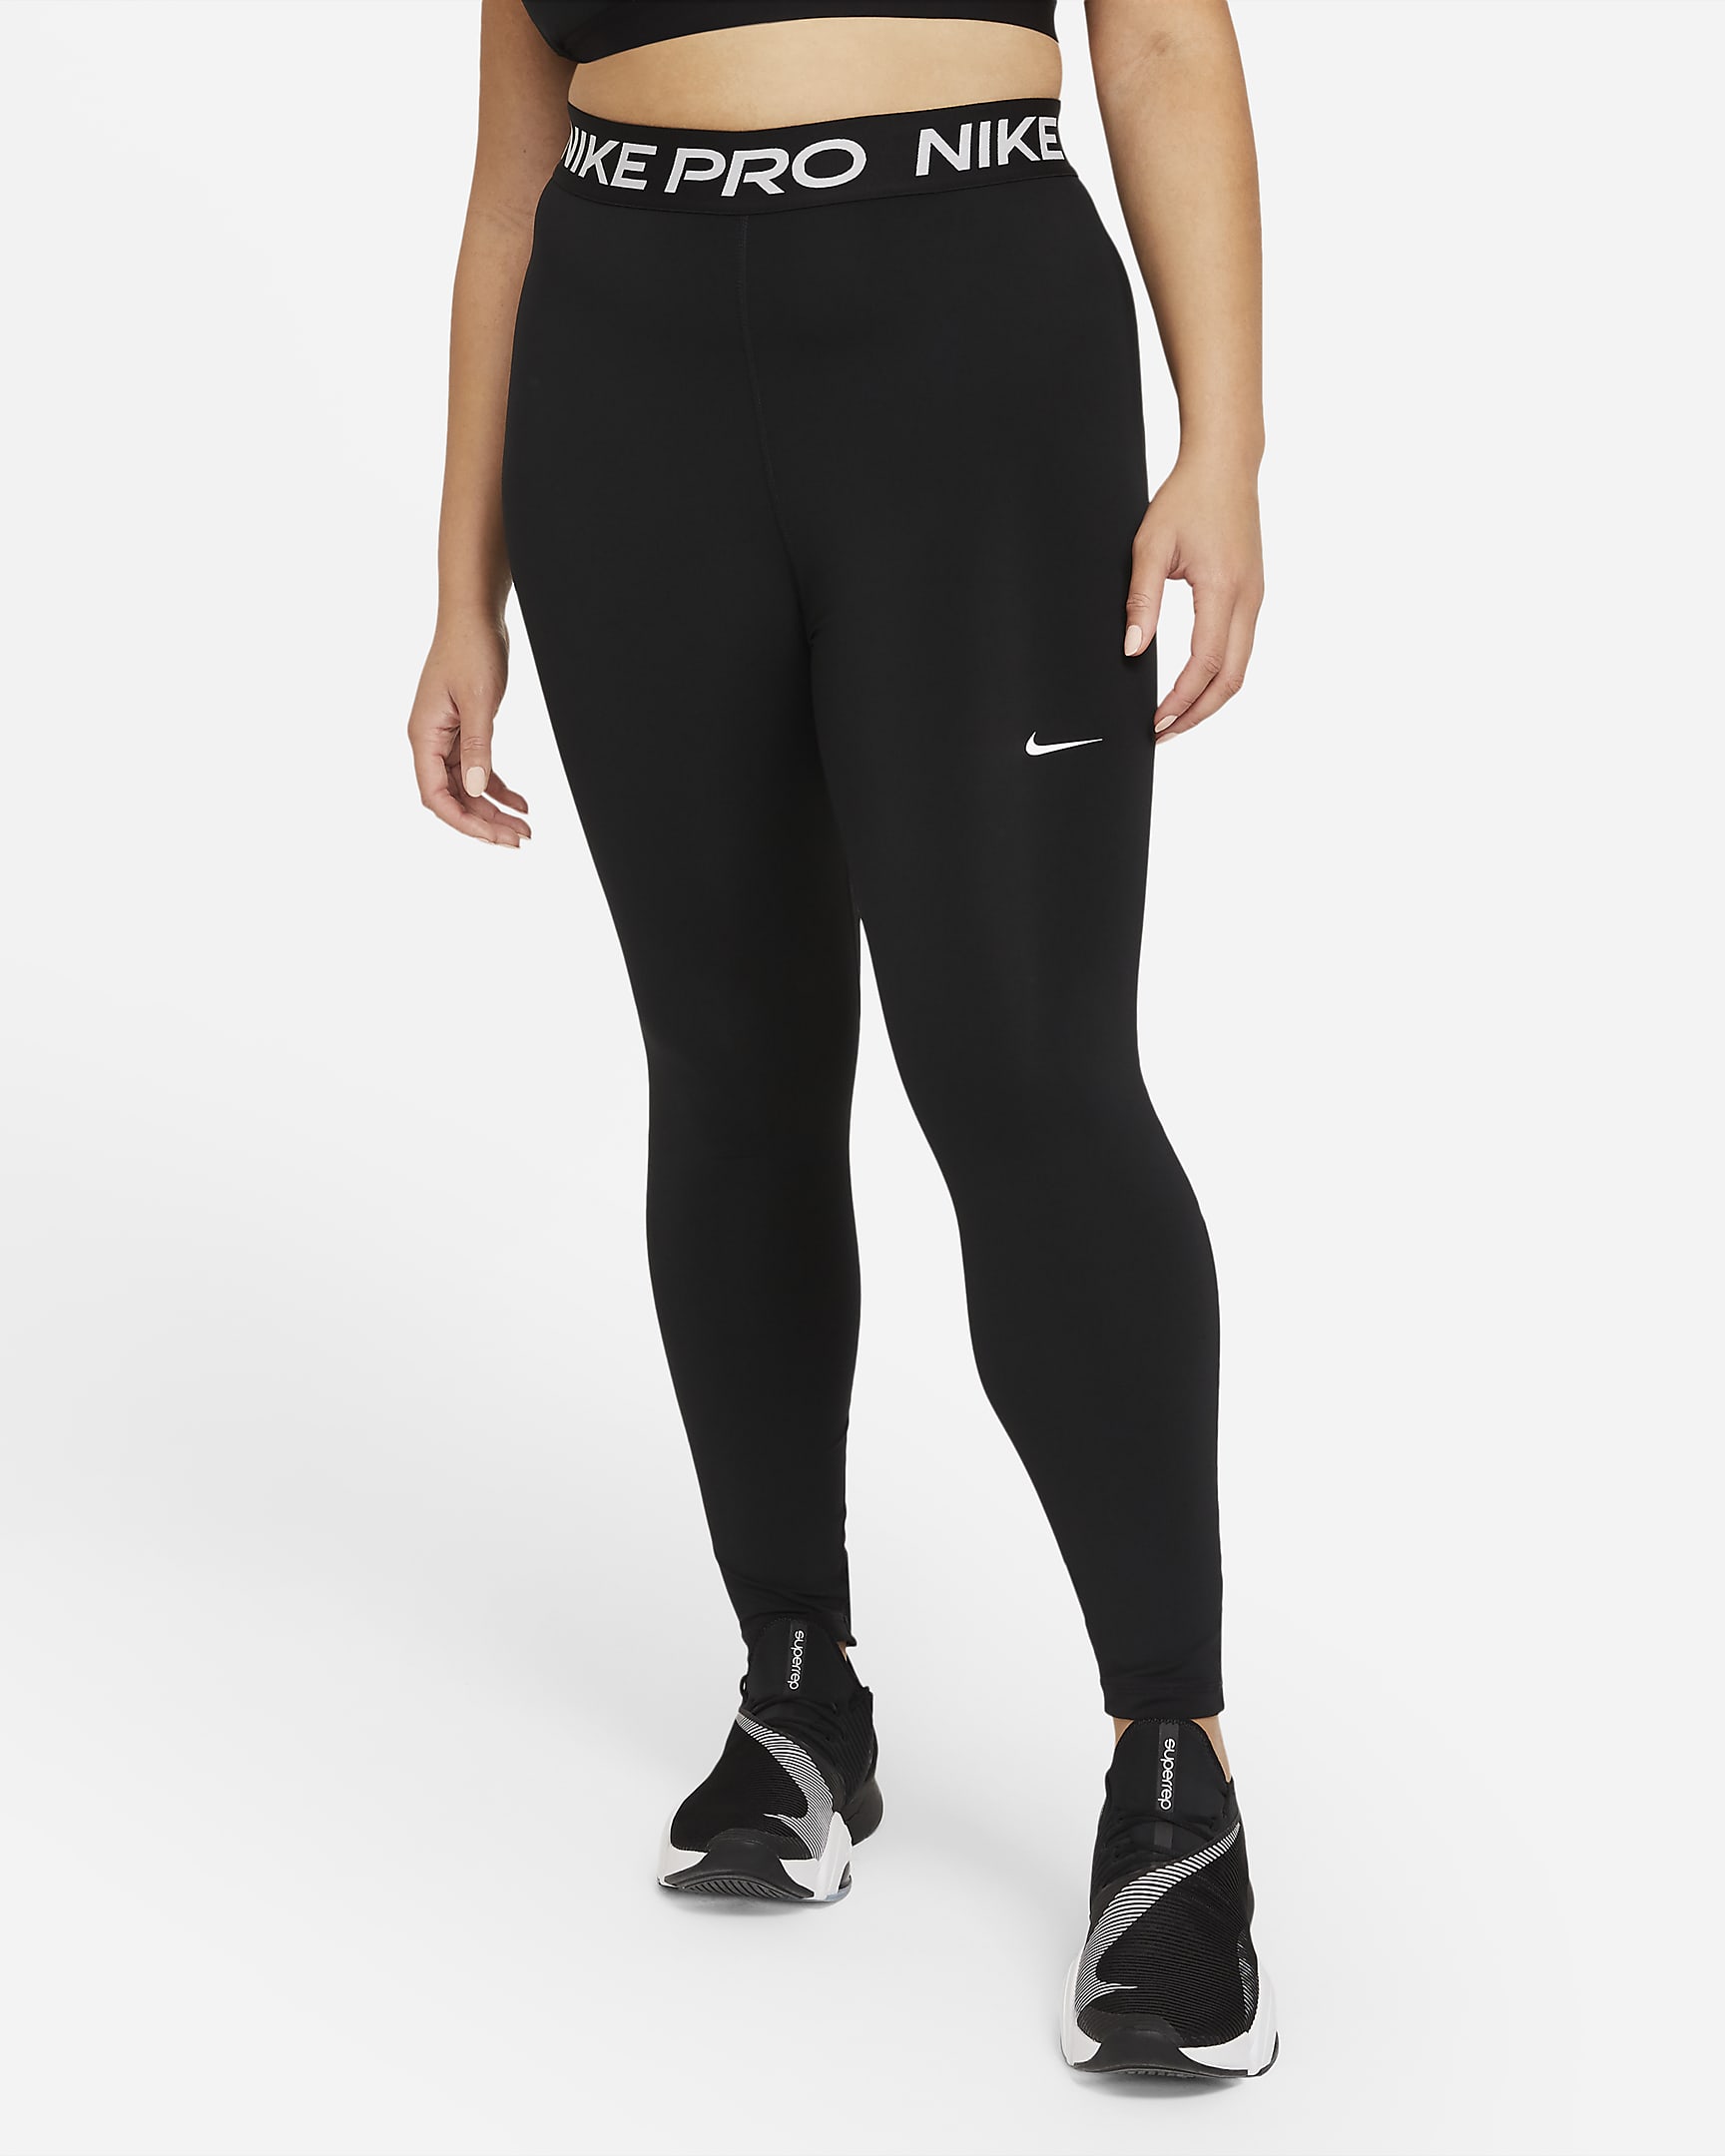 Legging Nike Pro 365 pour Femme (grande taille) - Noir/Blanc